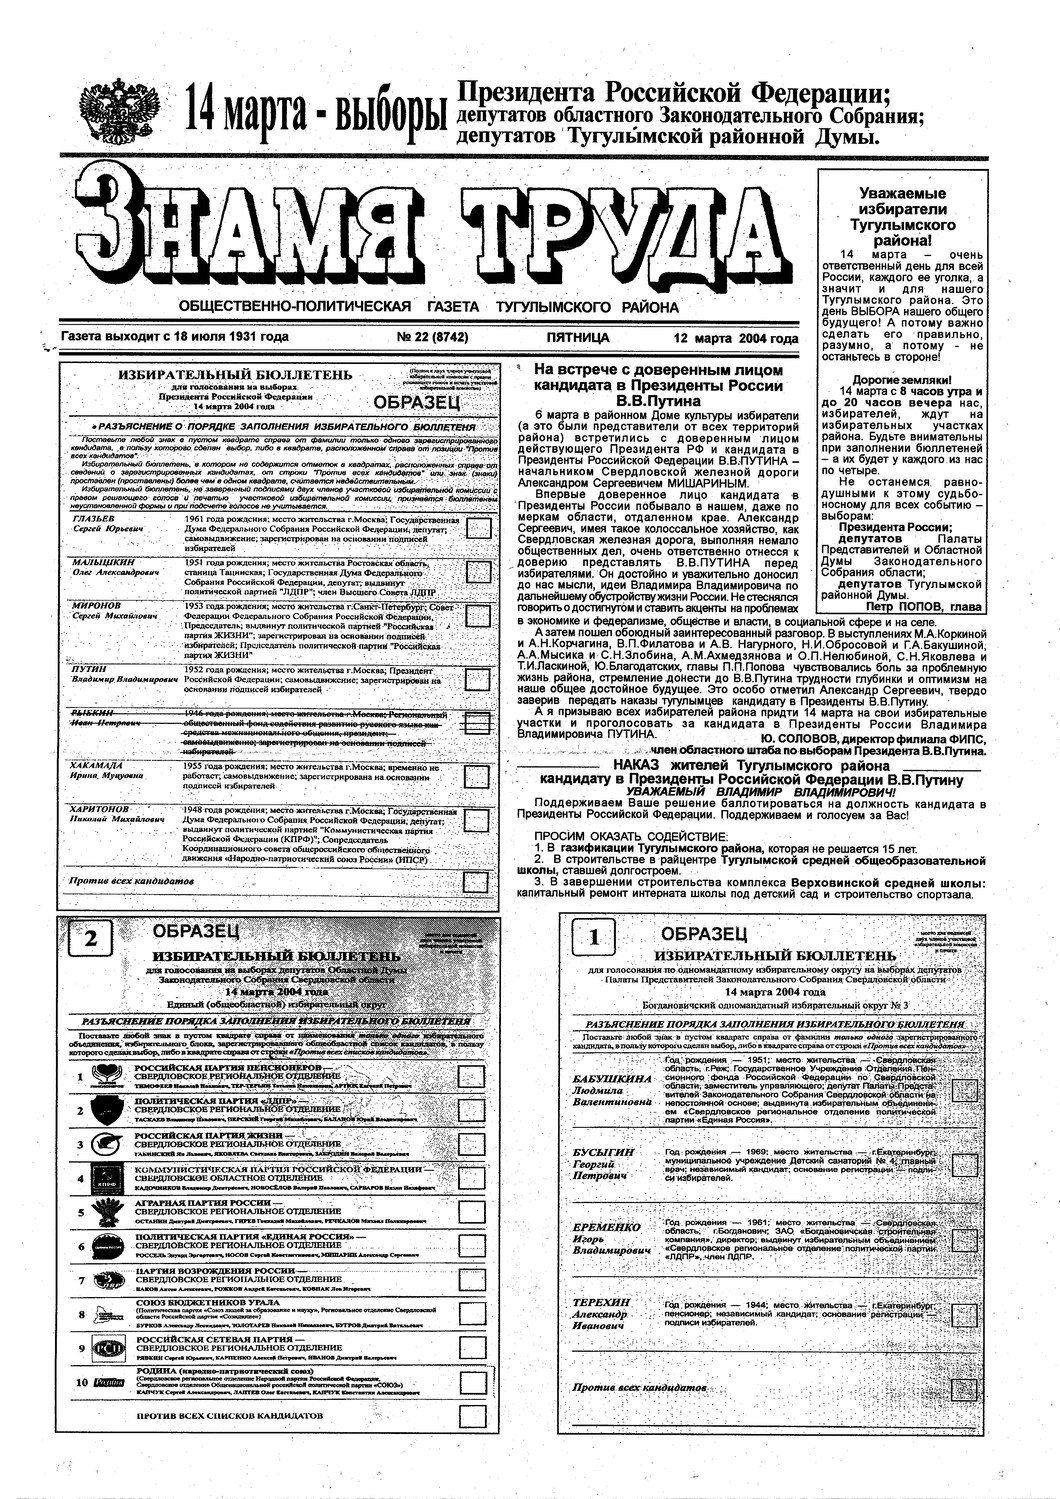 Знамя труда №22 от 12 марта 2004г.